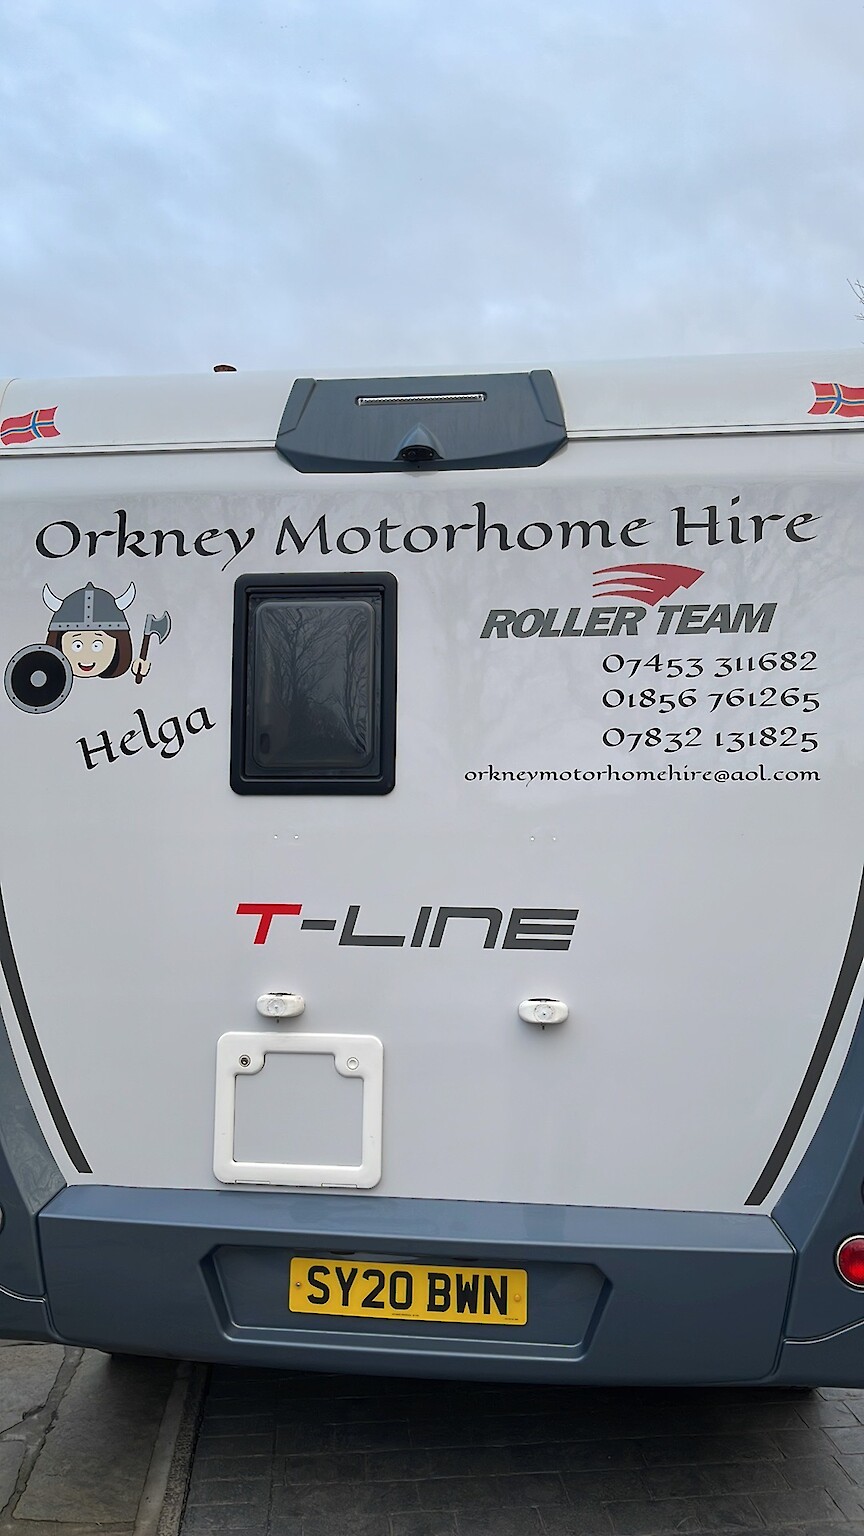 Orkney Motorhome Hire Logo